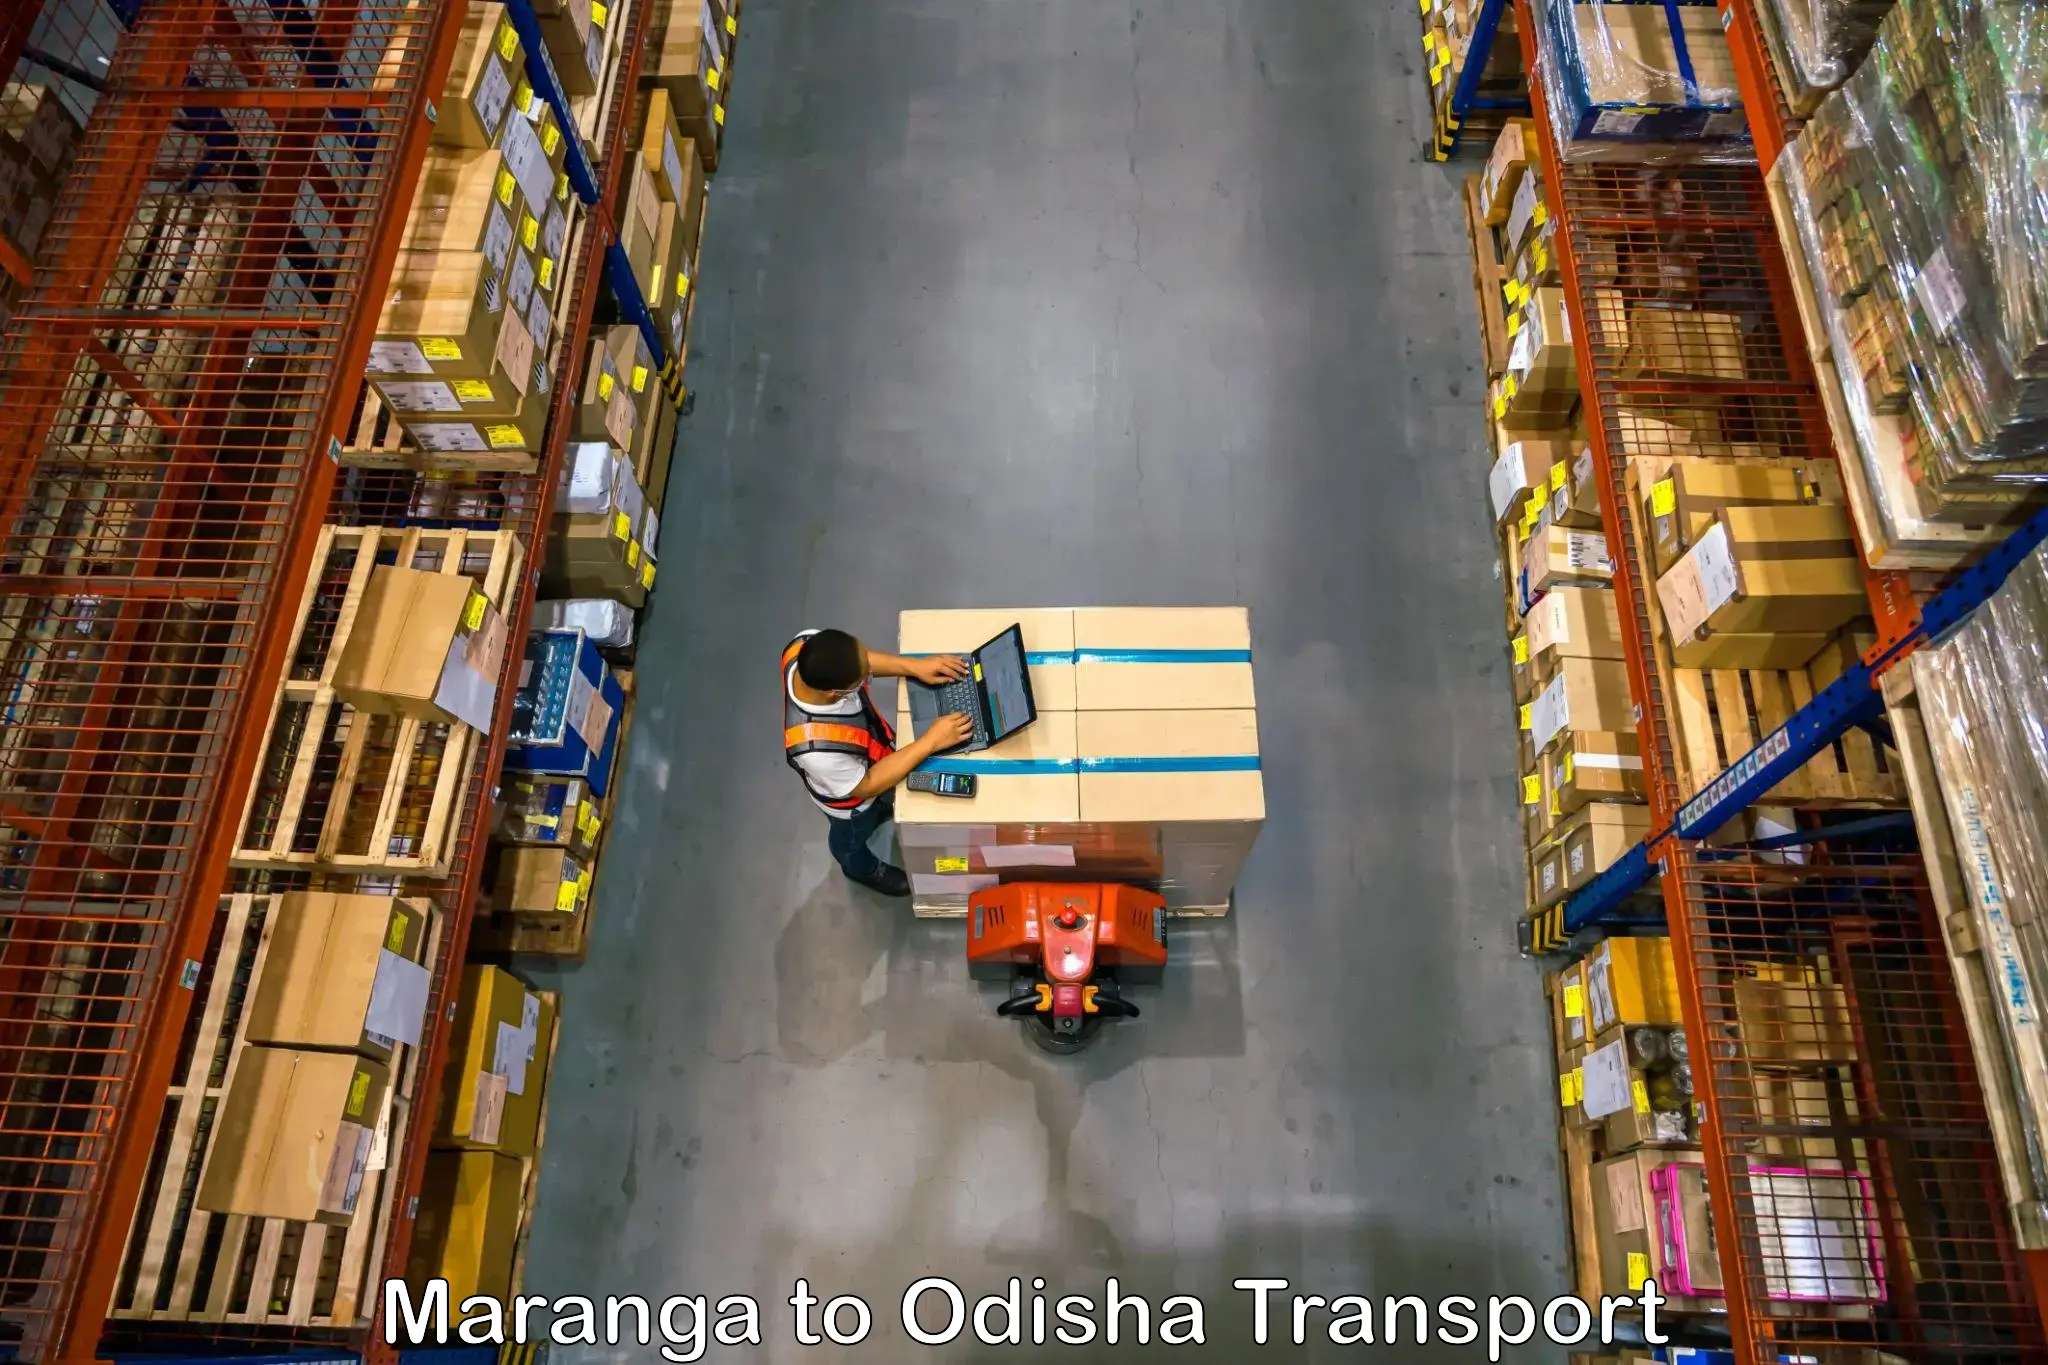 Vehicle transport services Maranga to Sohela